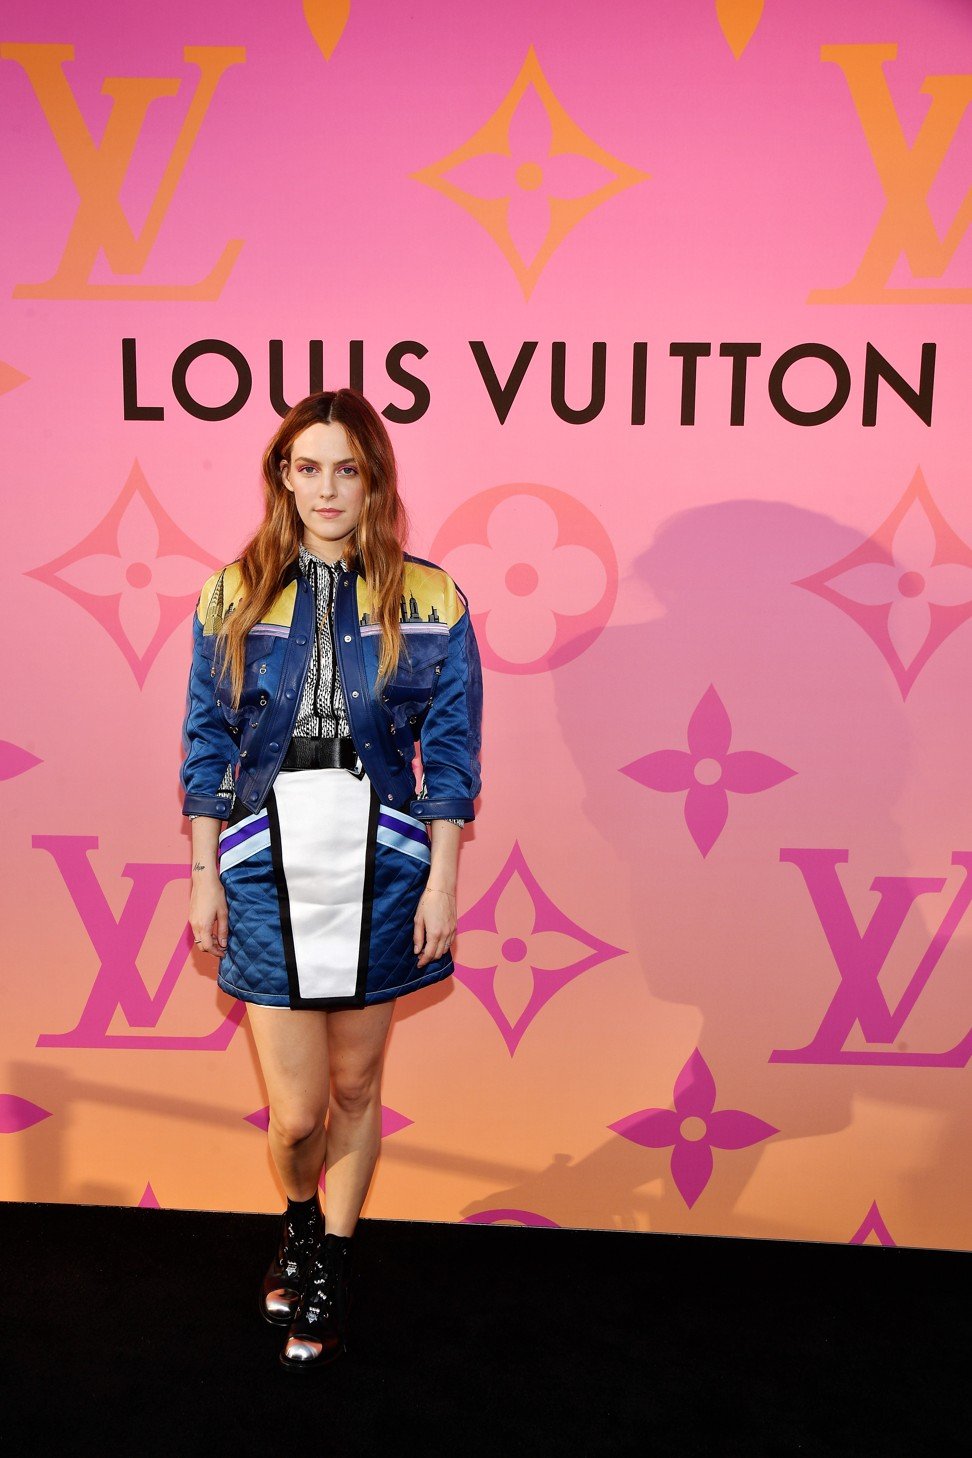 Louis Vuitton dresses the League of Legends